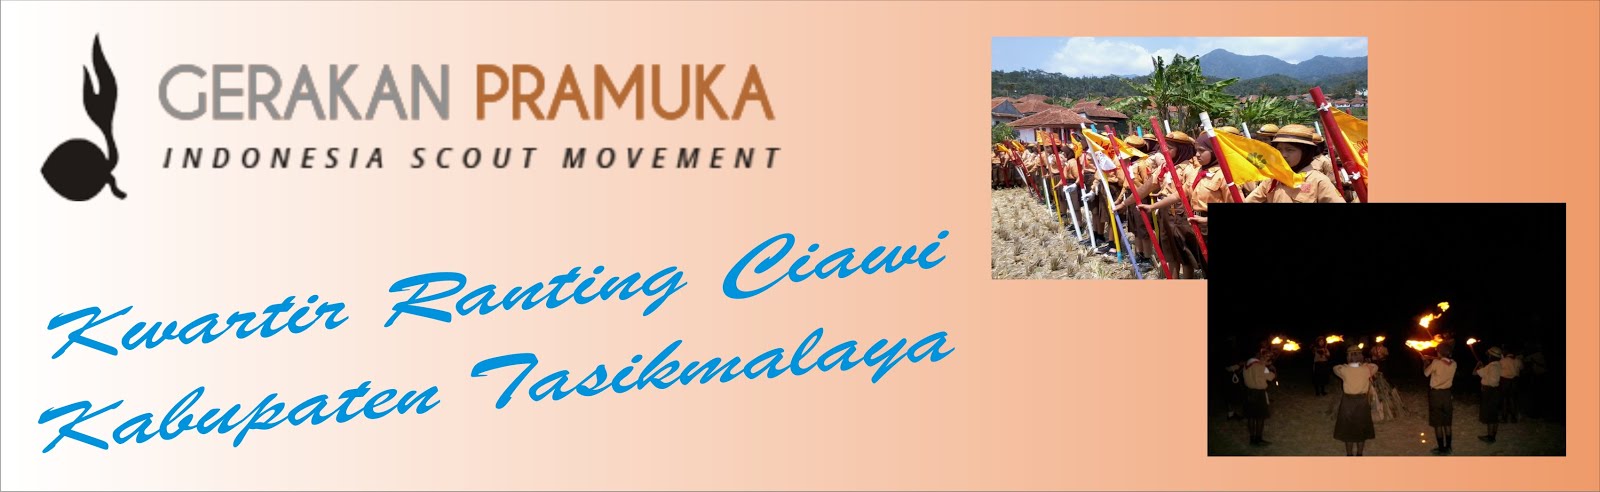 Gerakan Pramuka Kwartir Ranting Ciawi Kabupaten Tasikmalaya